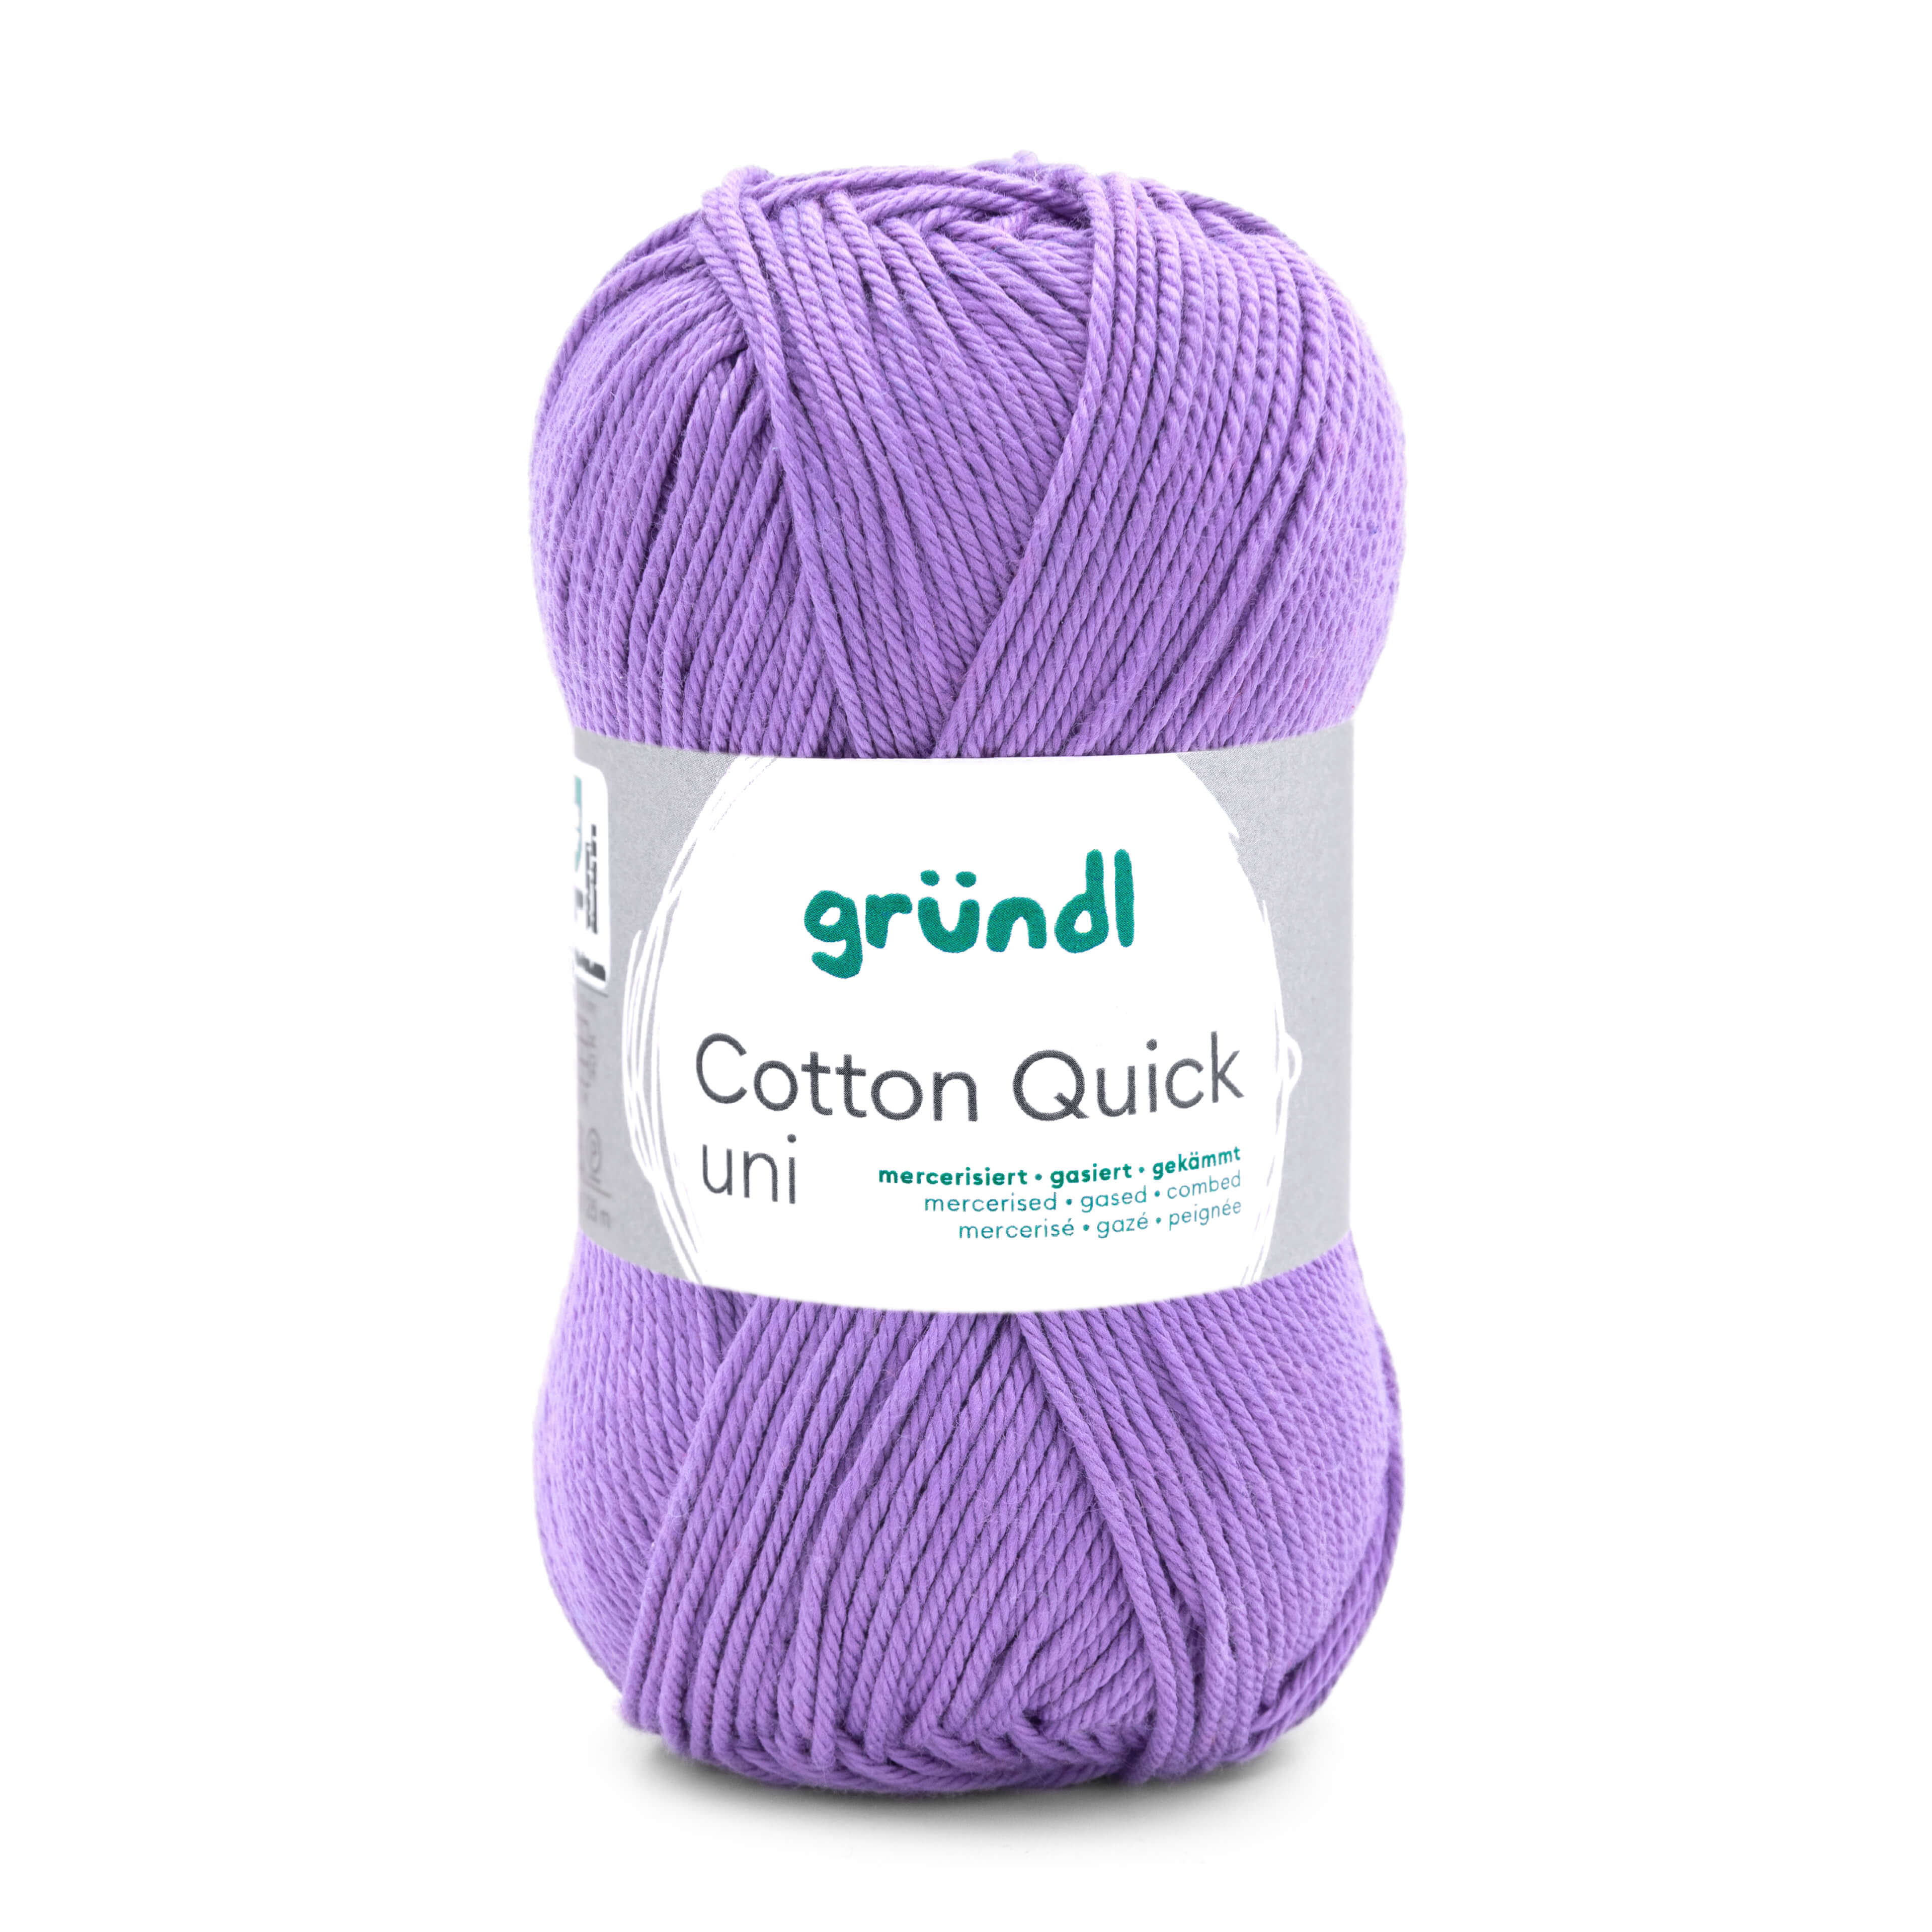 Gründl Cotton Quick uni in der Farbe Lavendel ideal für Handarbeitsprojekte aller Art, zum Stricken, Häkeln, für Amigurumis oder dünne Häkelkleidung. 100% Baumwolle, mercerisiert, gasiert und gekämmt